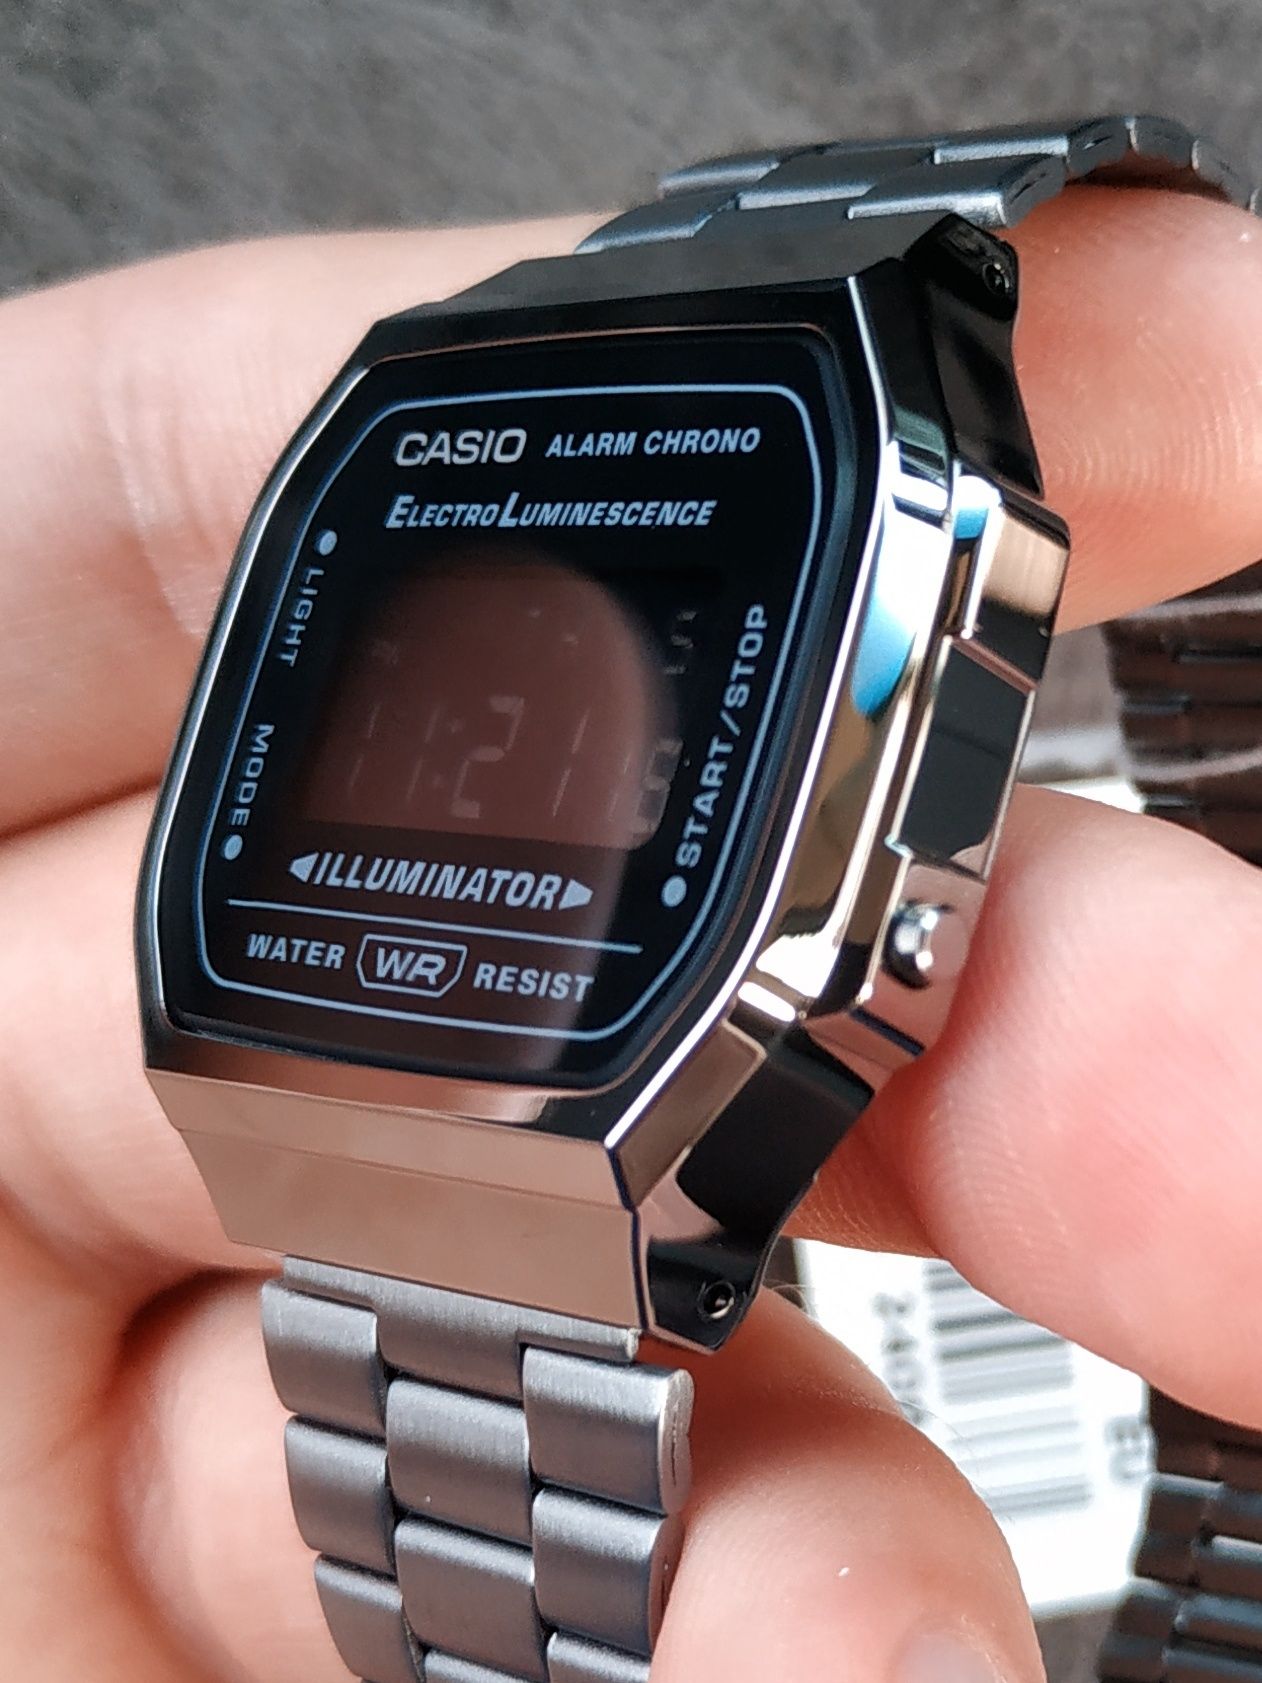 Часы мужские Casio Retro Vintage Оригинал Гарантия В черном цвете